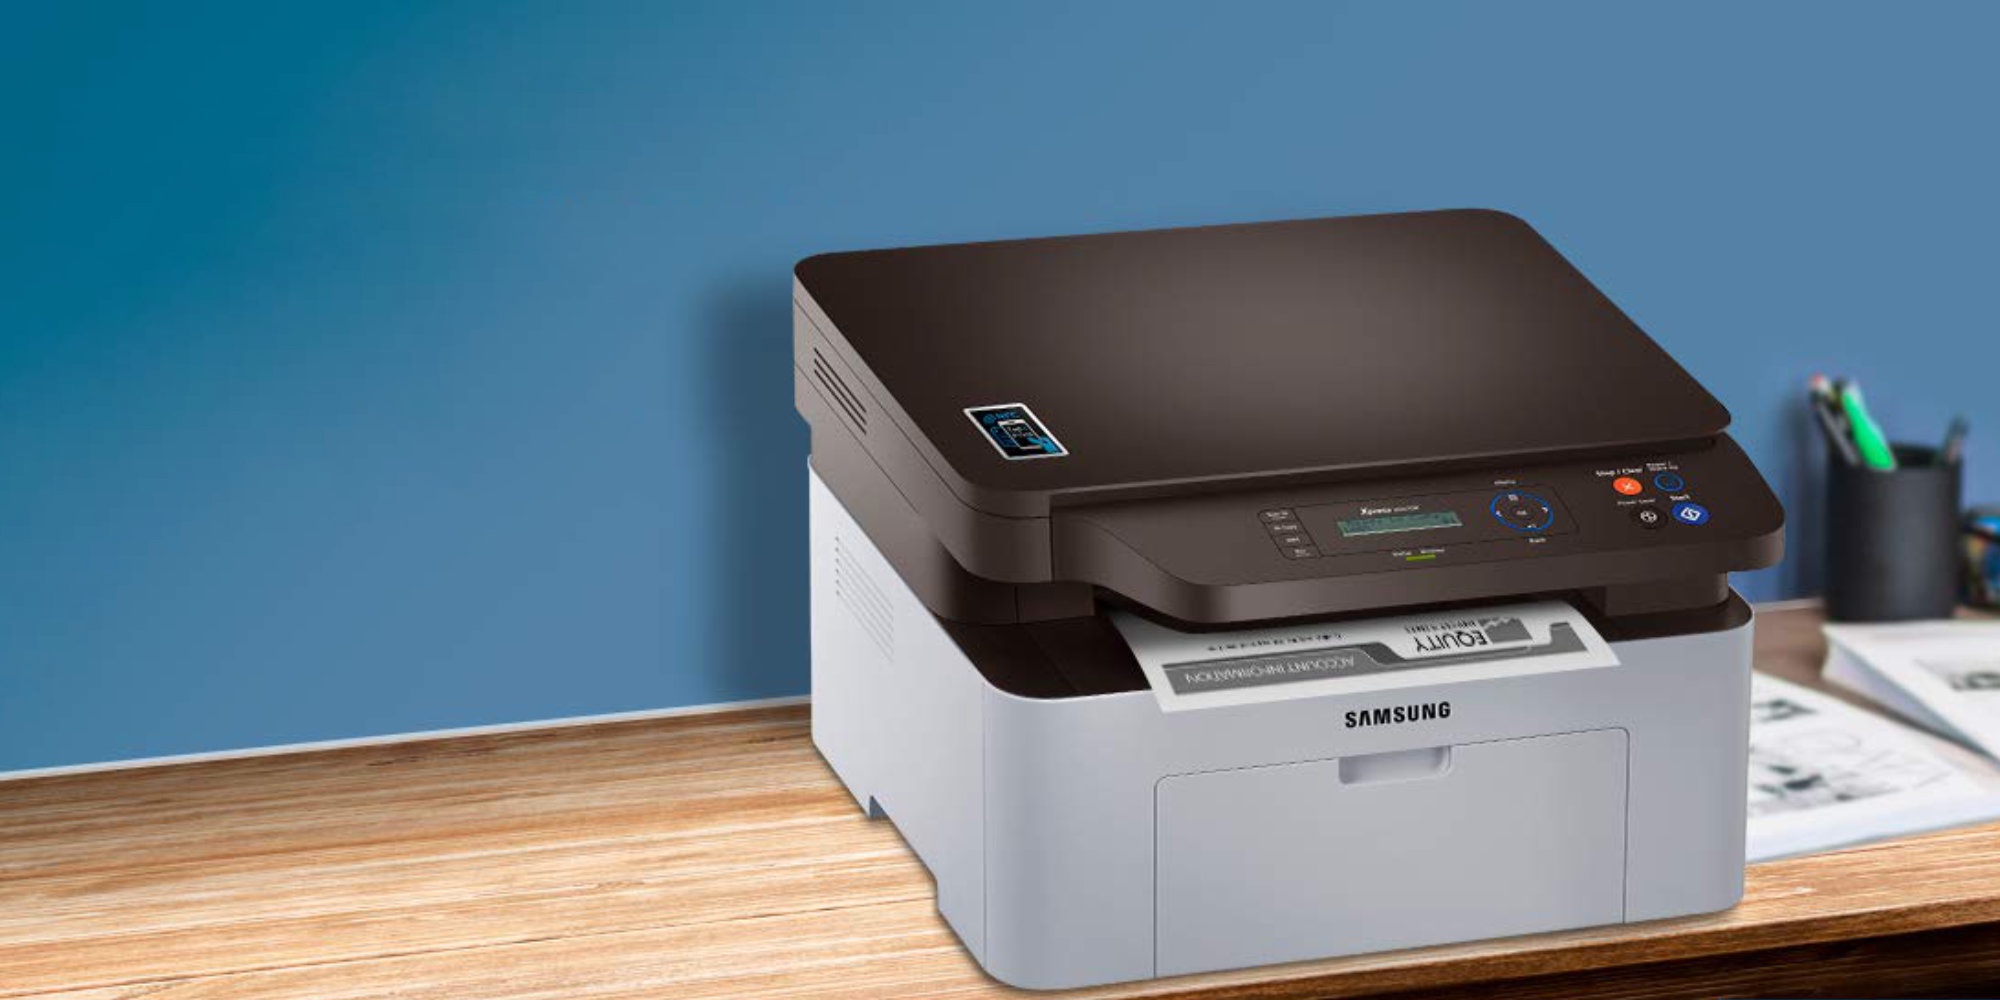 Принтер Samsung 2023 Драйвер